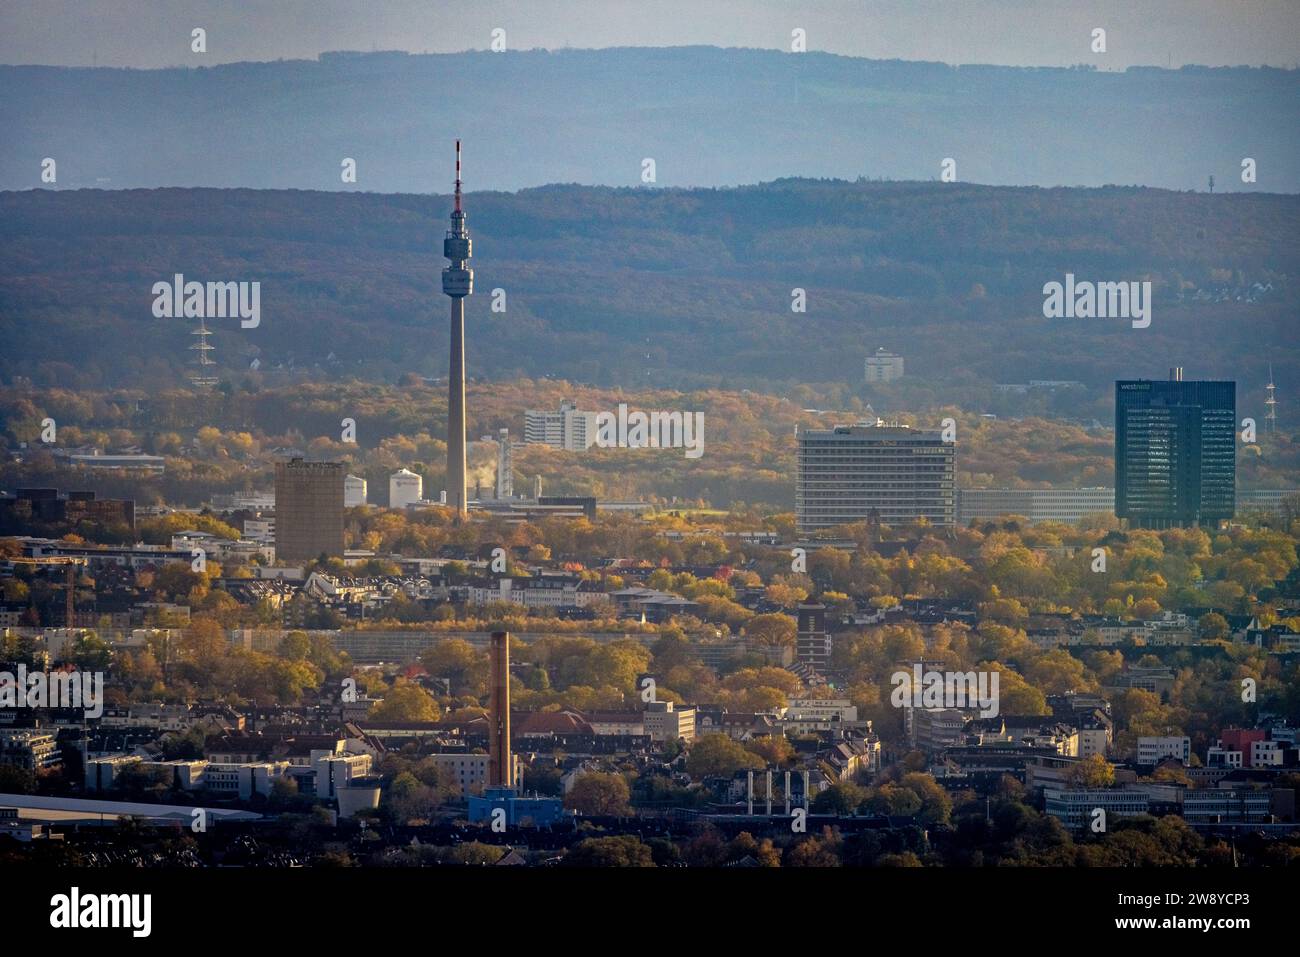 Vista aerea, skyline di Dortmund con vista a distanza, torre di osservazione Florianturm e torre della televisione simbolo di Westfalenpark, alti edifici Foto Stock